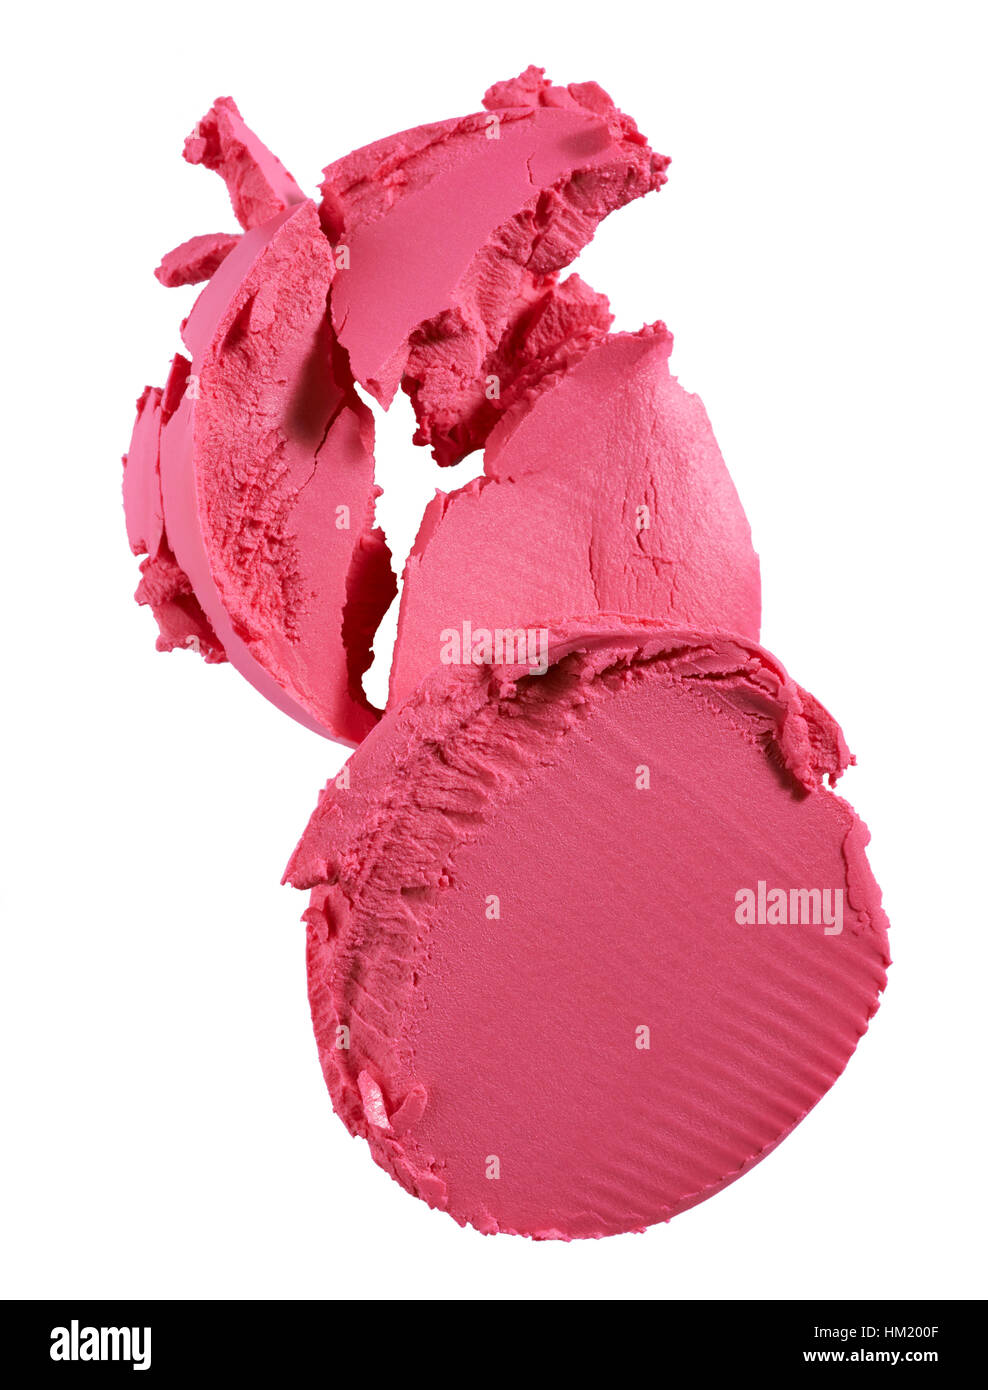 Eine ausgeschnittene Bild einer Probe des rosa Blush oder Rouge Sticks. Stockfoto